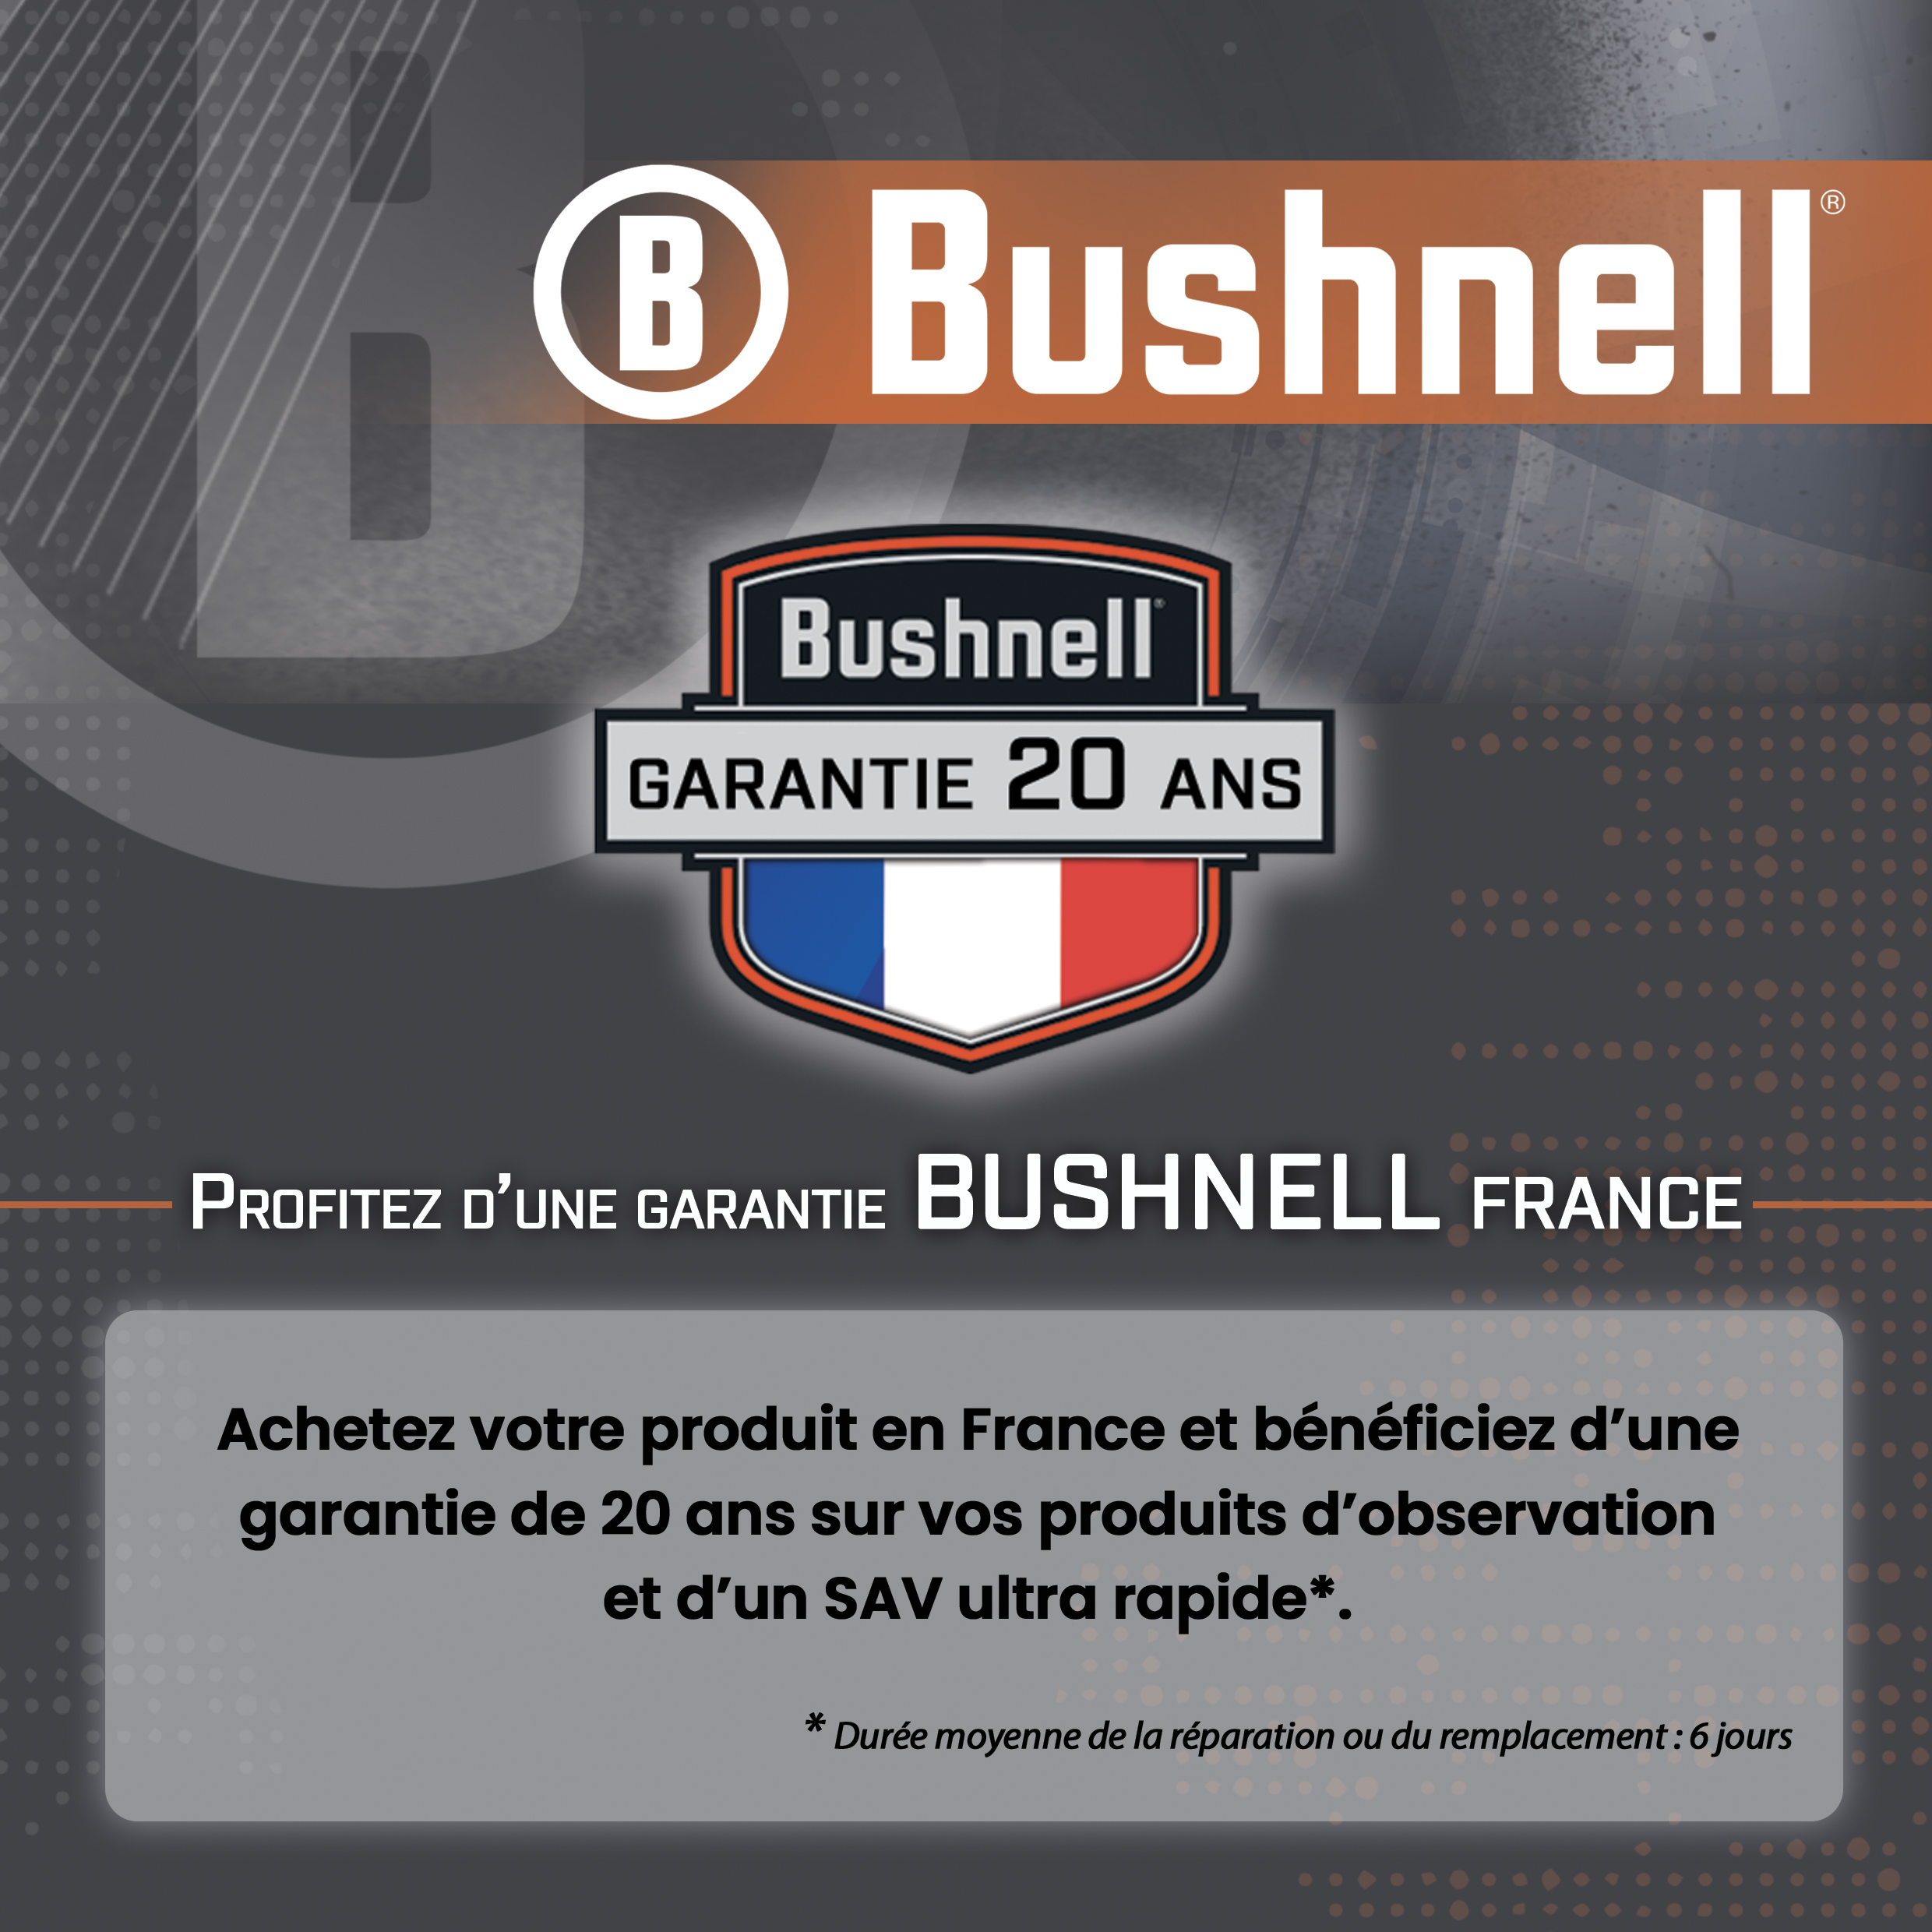 https://www.coutellerie-tourangelle.com/images/Image/garantie-Bushnell-France.jpg